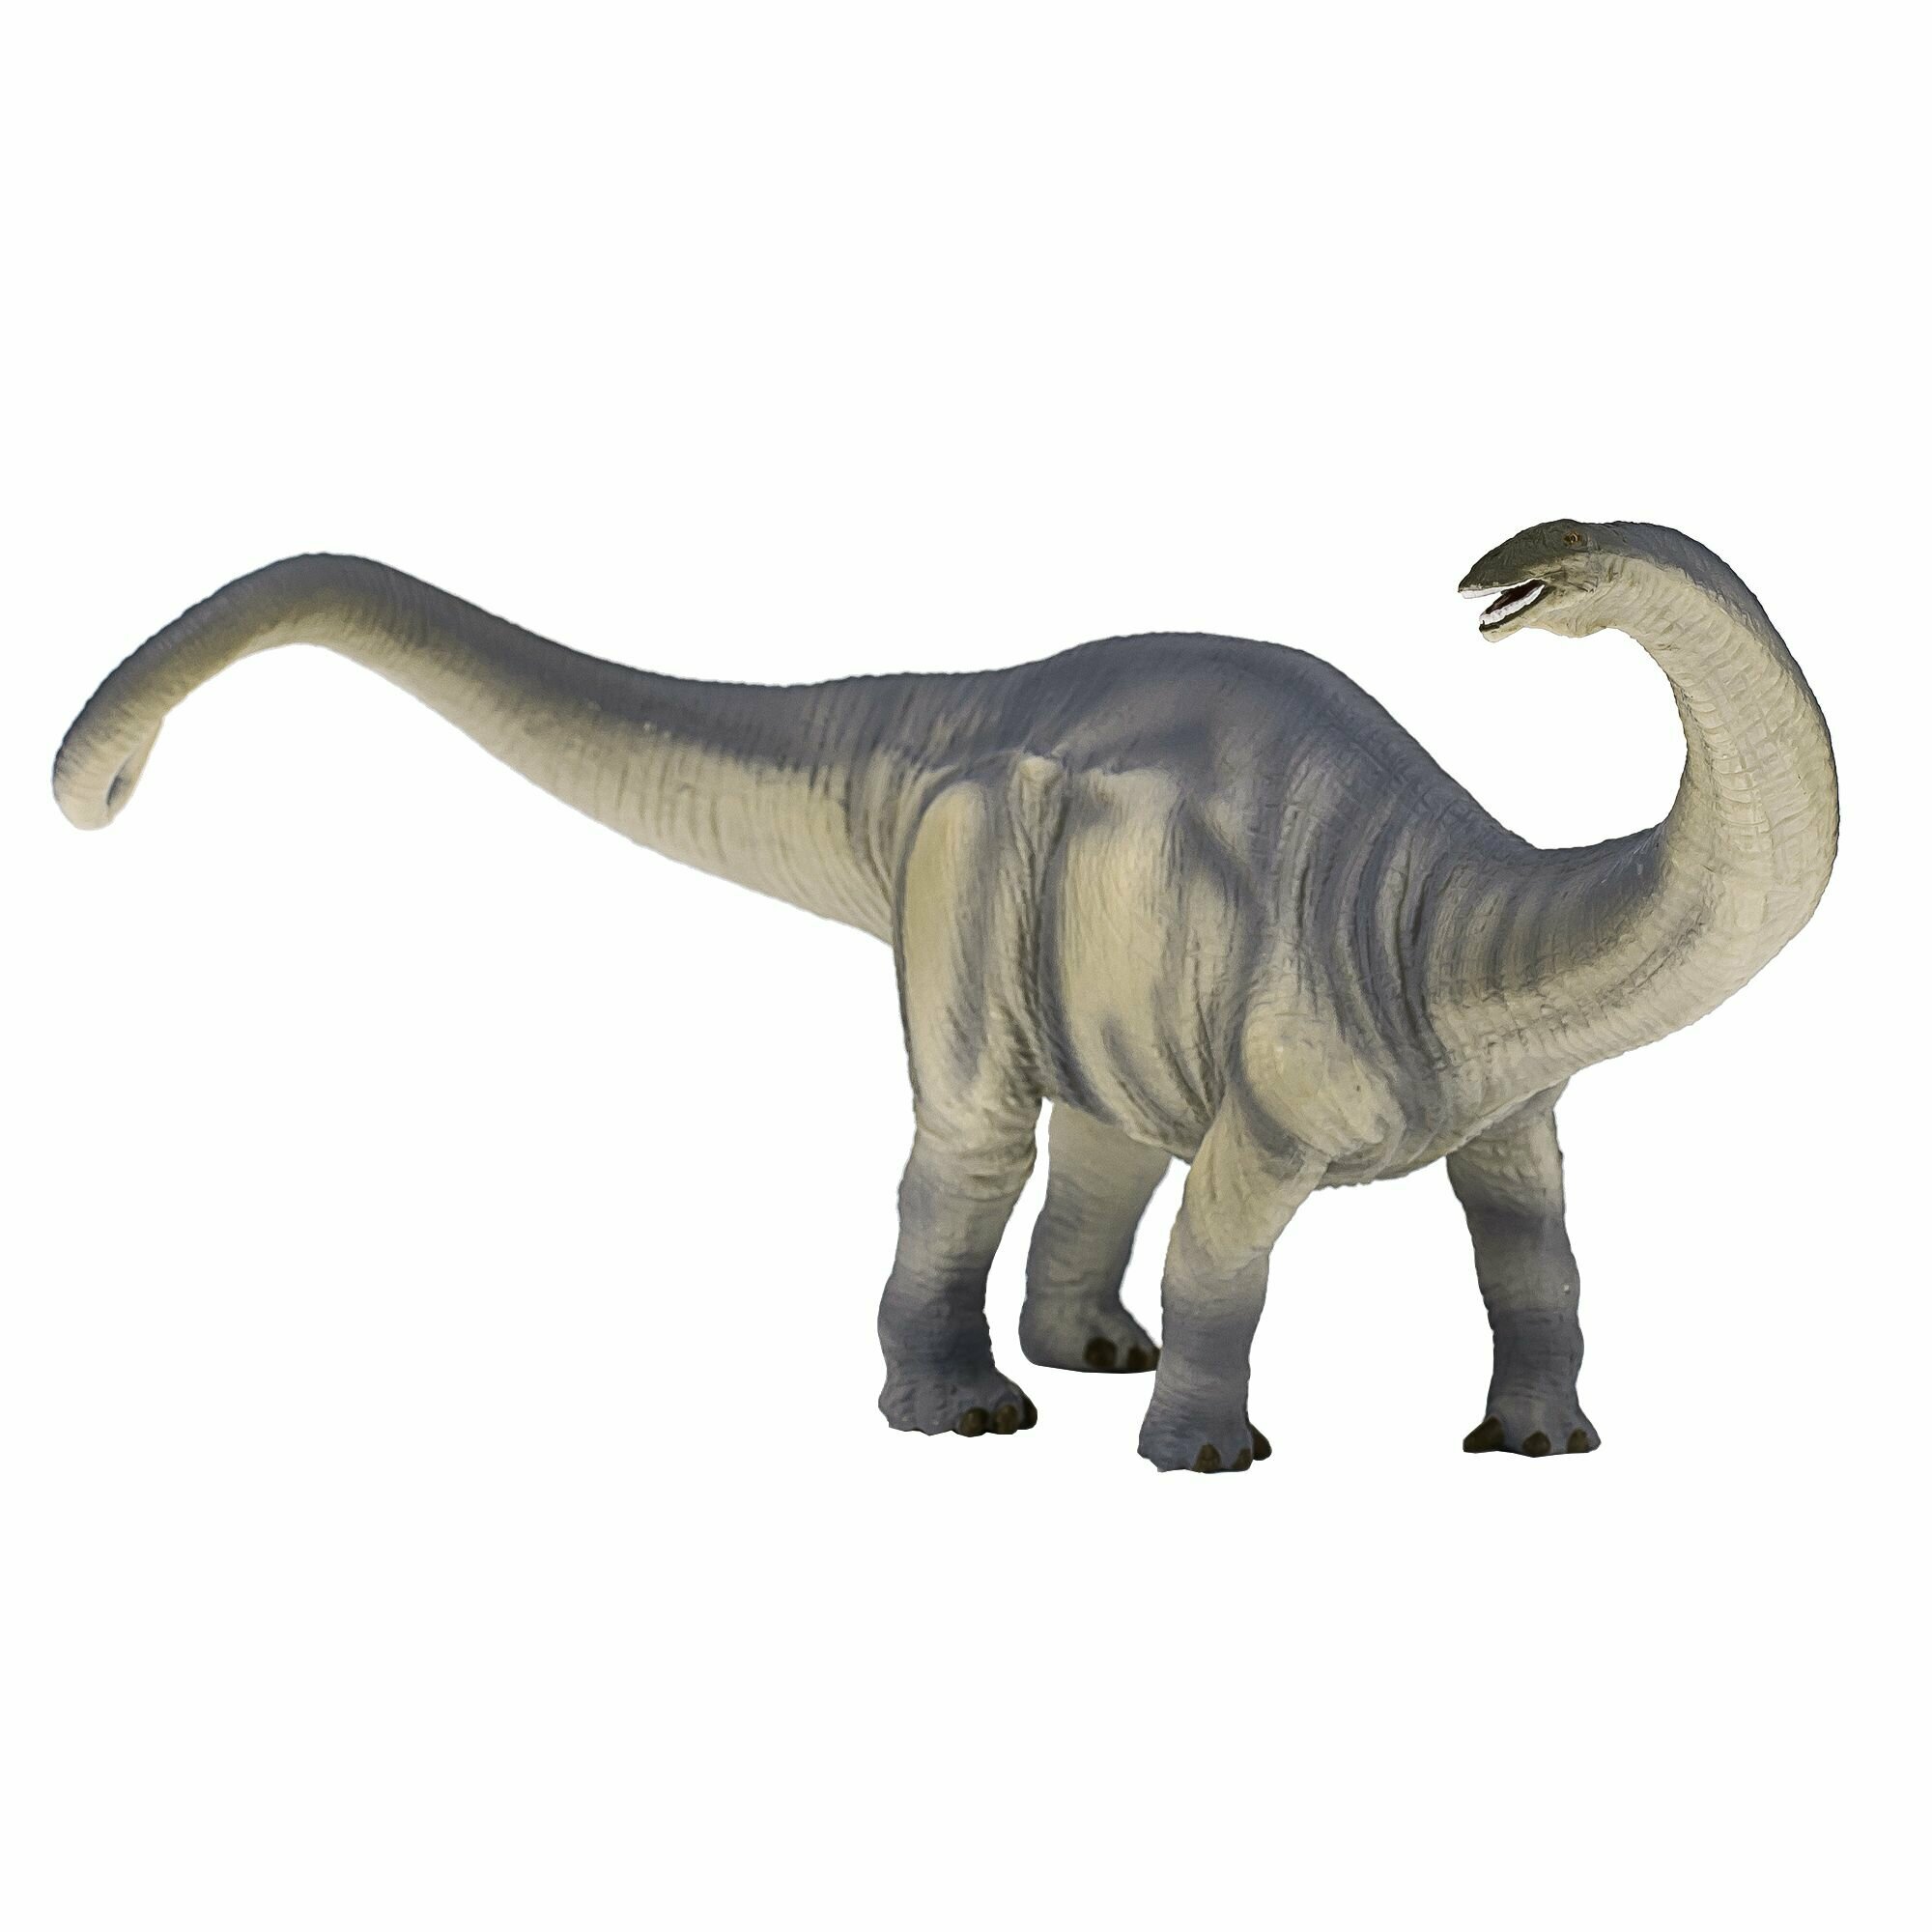 Фигурка динозавра Бронтозавр, делюкс, AMD4039, Konik